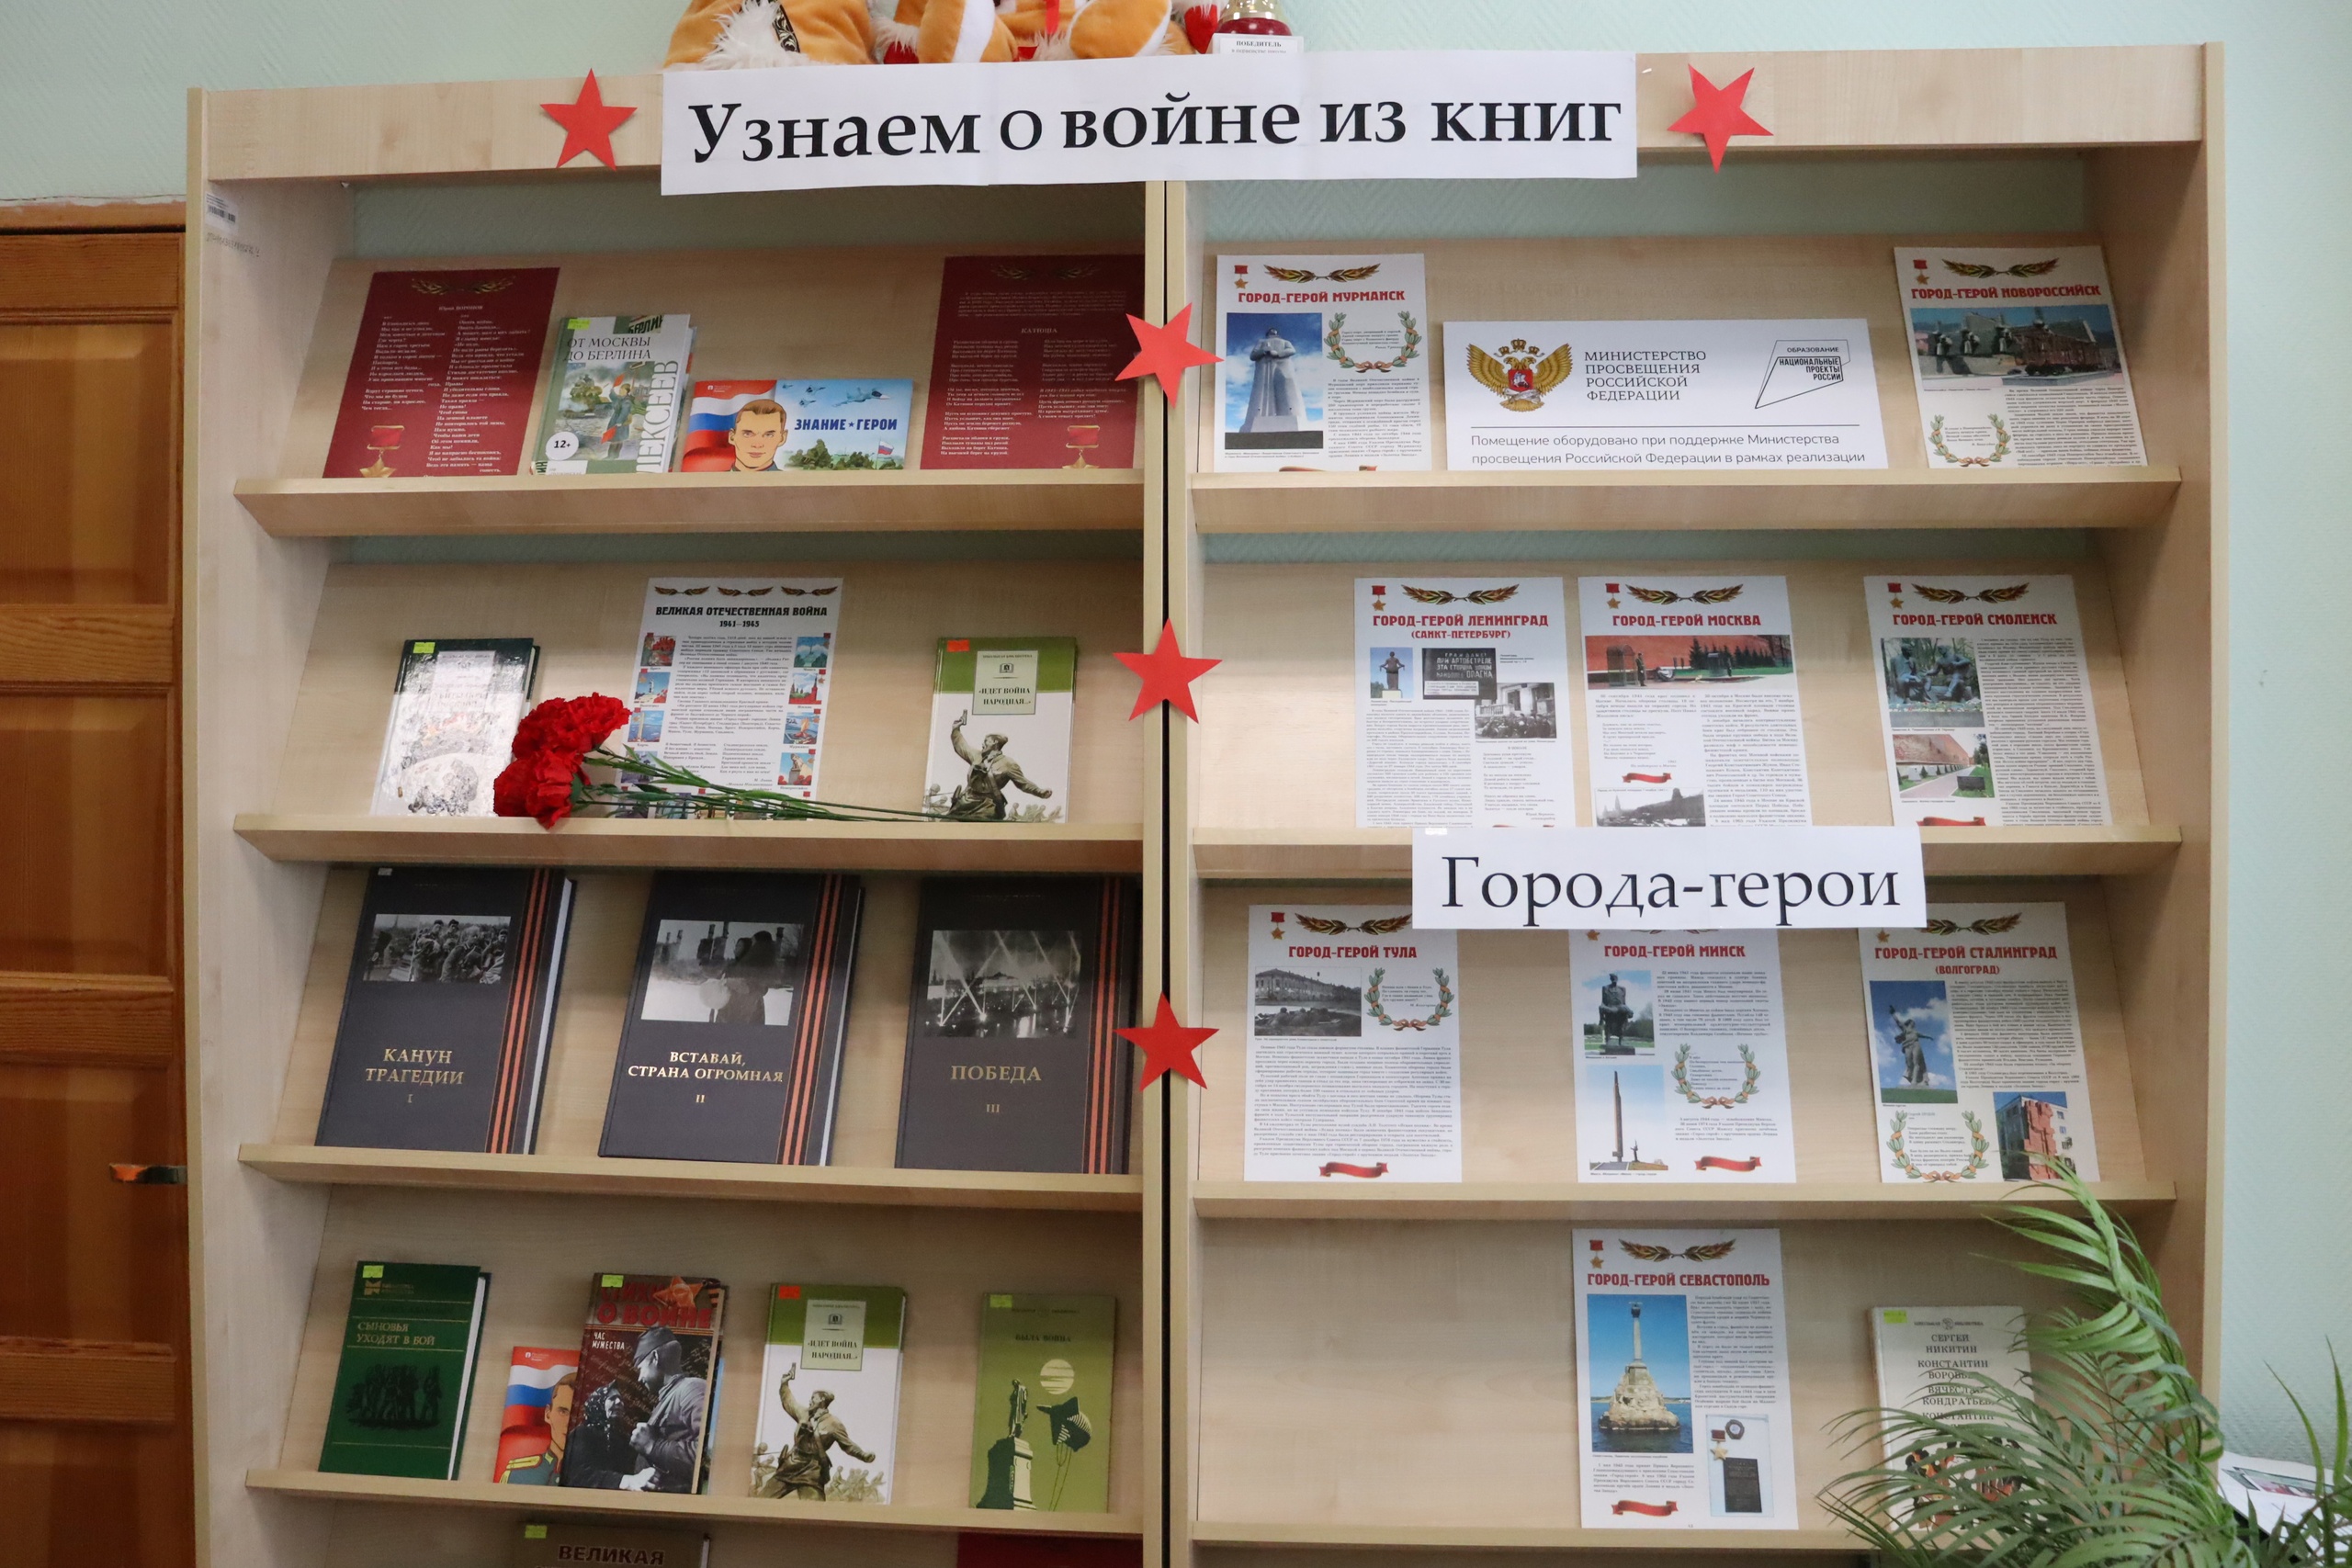 Книжная выставка: «Узнаем о войне из книг».